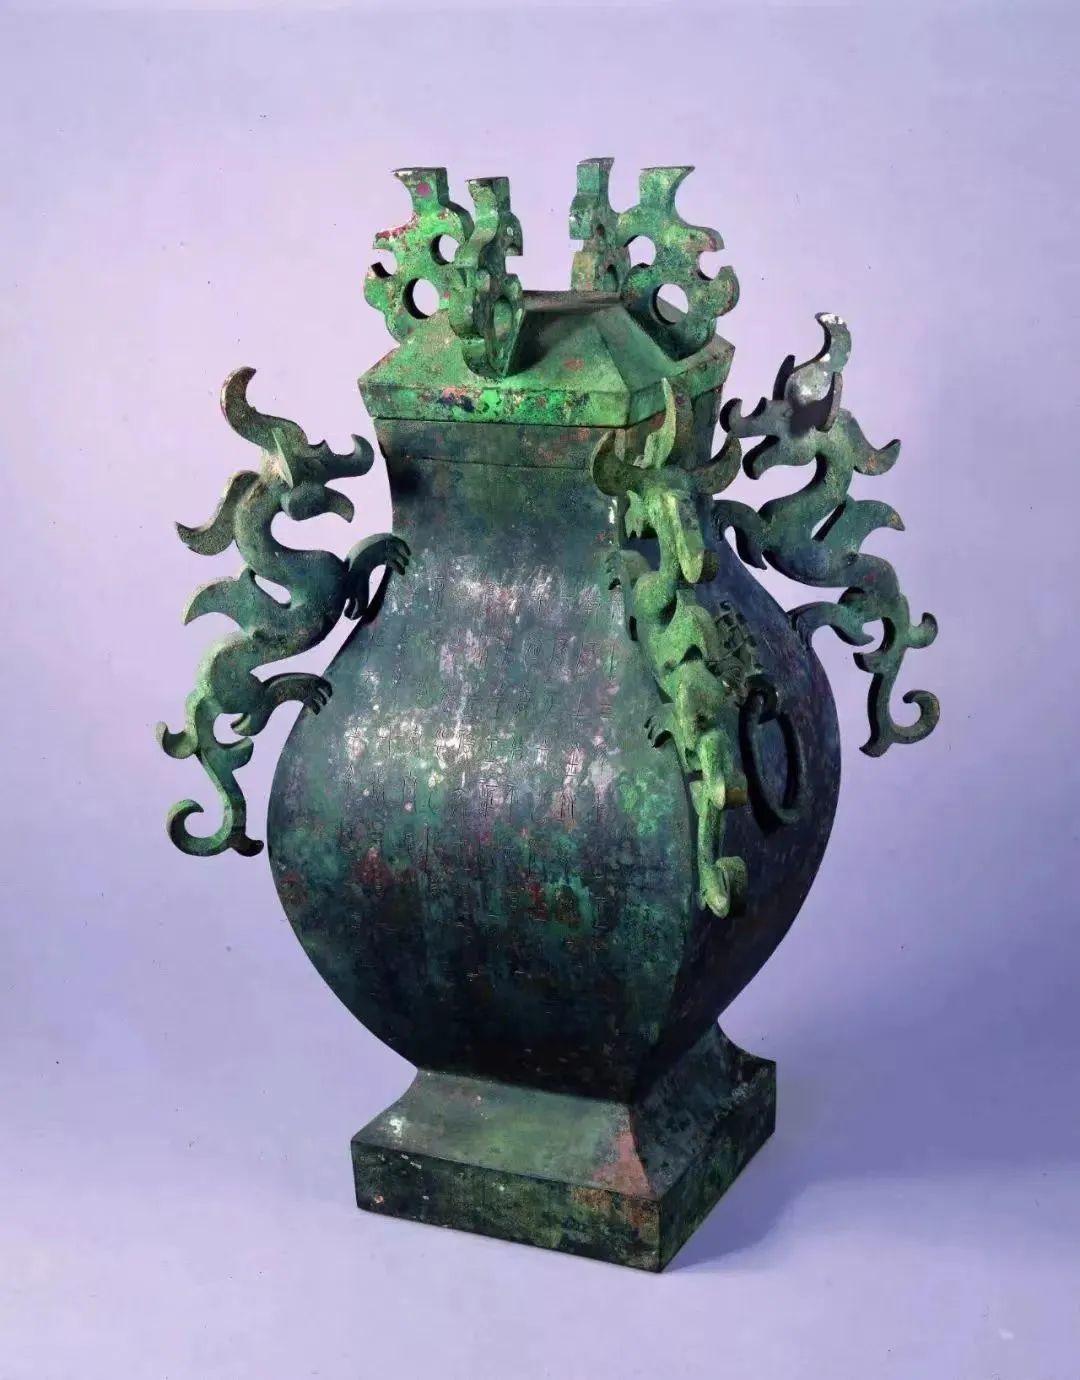 夔龙饰铜方壶首次亮相上海来自石家庄的古中山国文物颇受欢迎